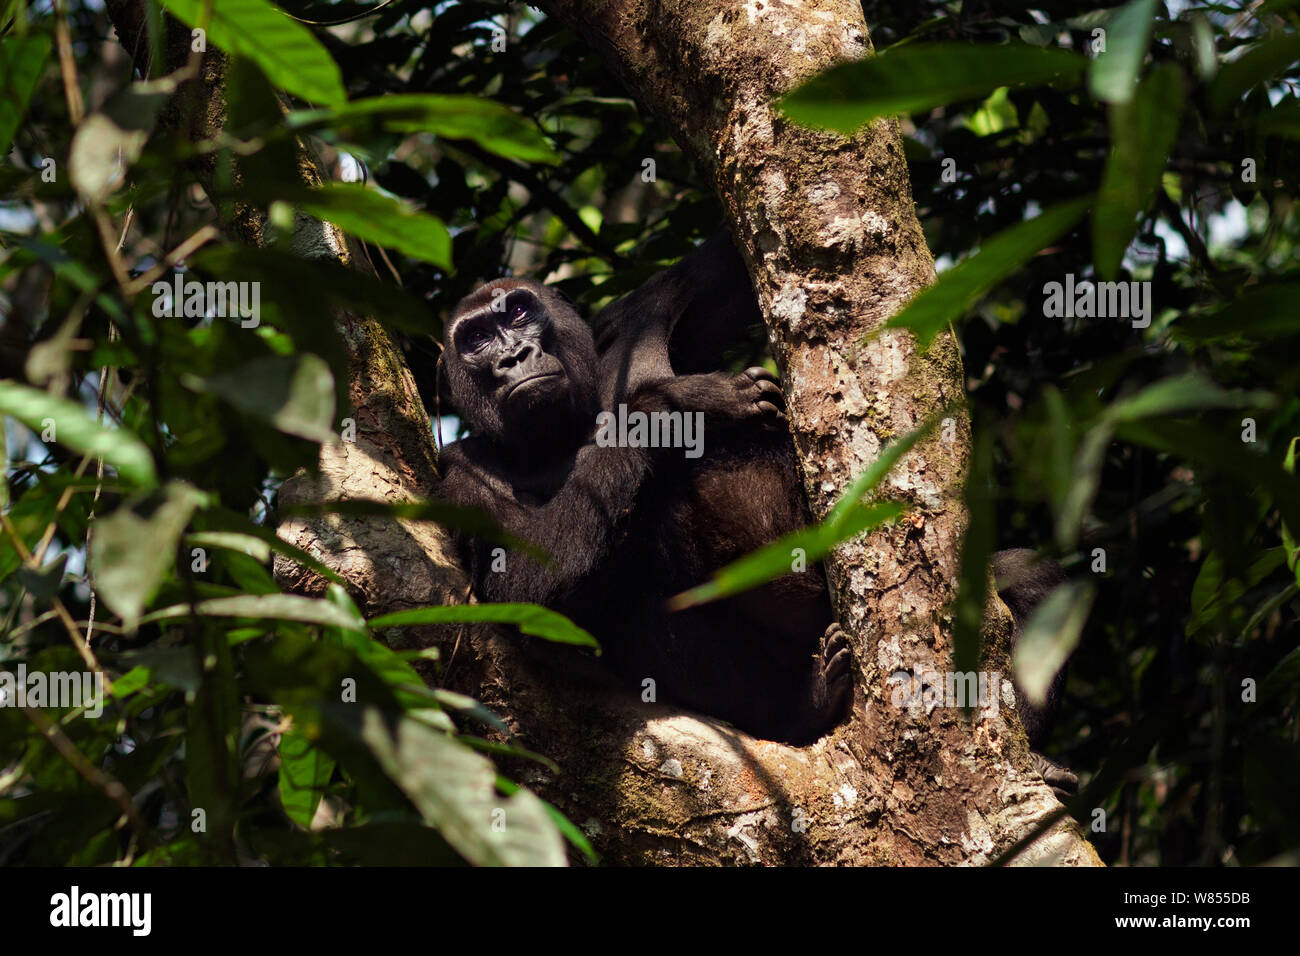 Gorille de plaine de l'ouest (Gorilla gorilla gorilla) femmes 'Malui' assis dans un arbre, Bai Hokou, Spécial forêt dense de Dzanga Sangha, République centrafricaine. Décembre 2011. Banque D'Images